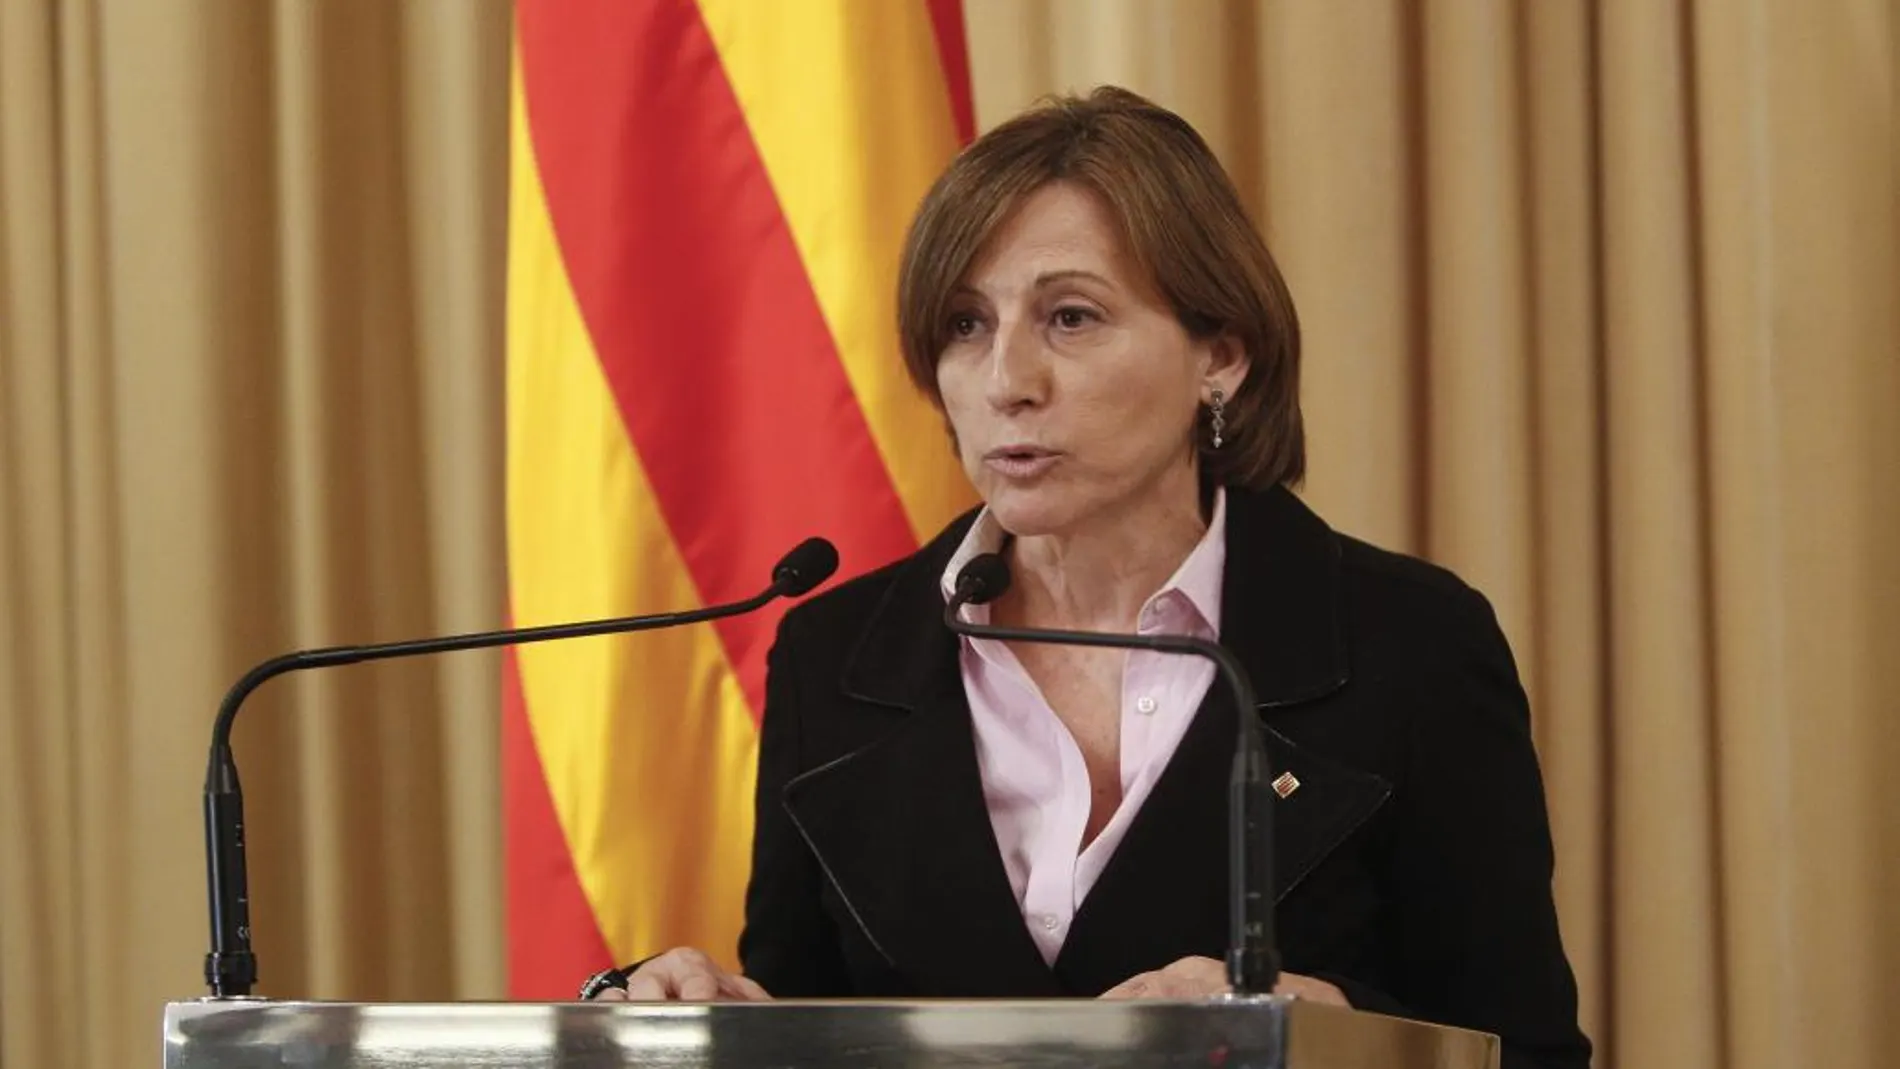 Carme Forcadell presidió la Asamblea Nacional Catalana hasta mayo de 2015